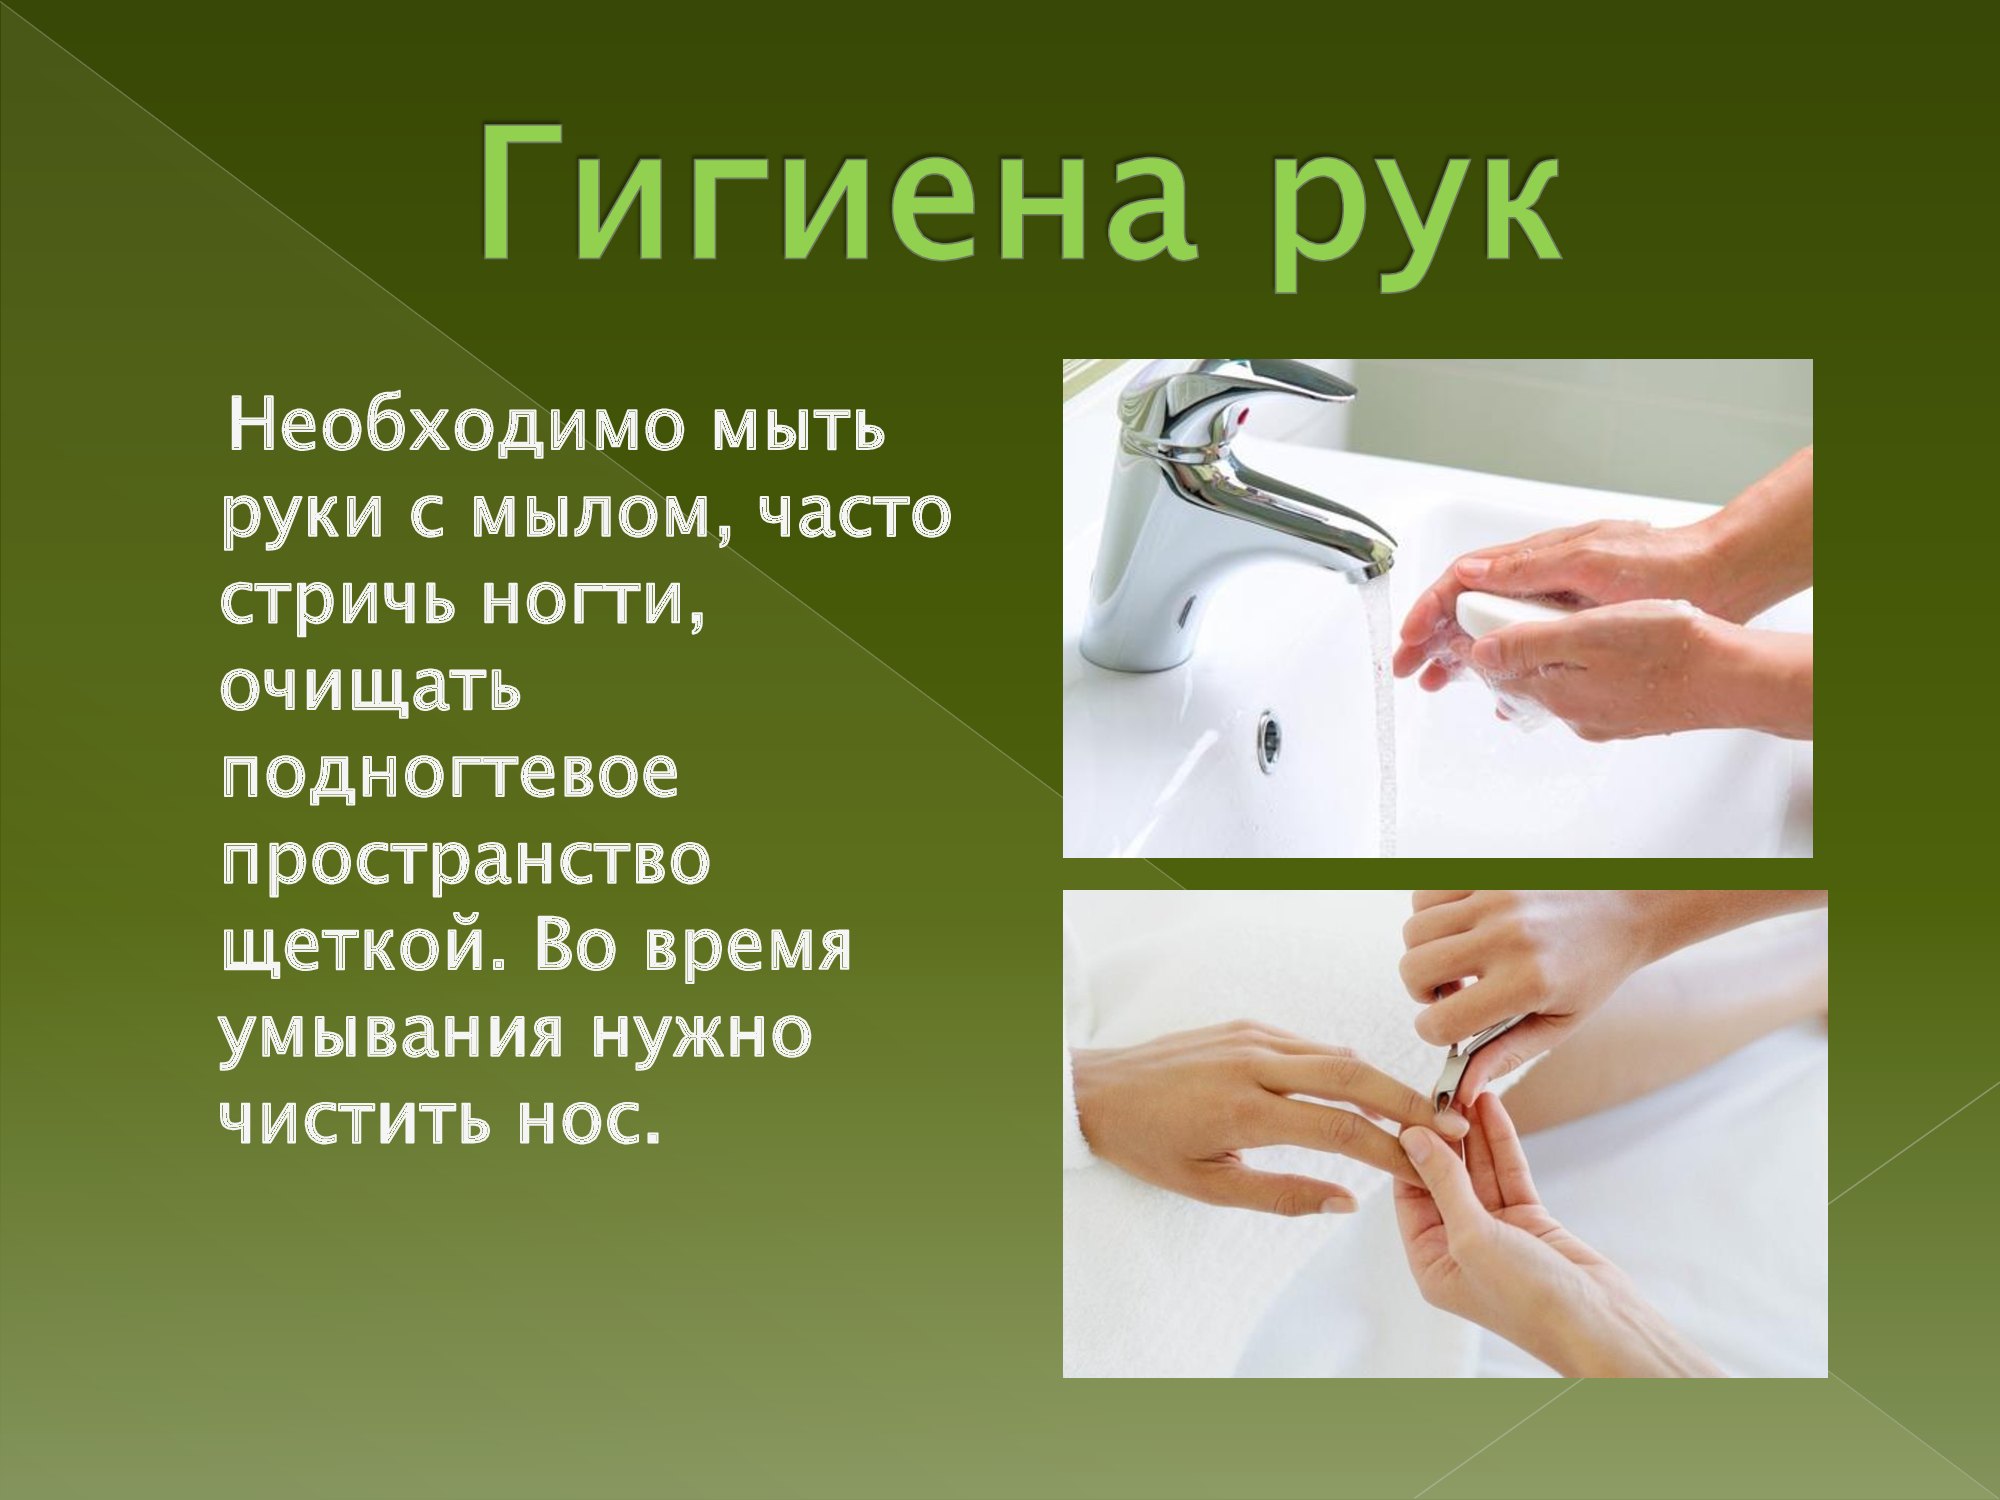 Гигиена рук для детей